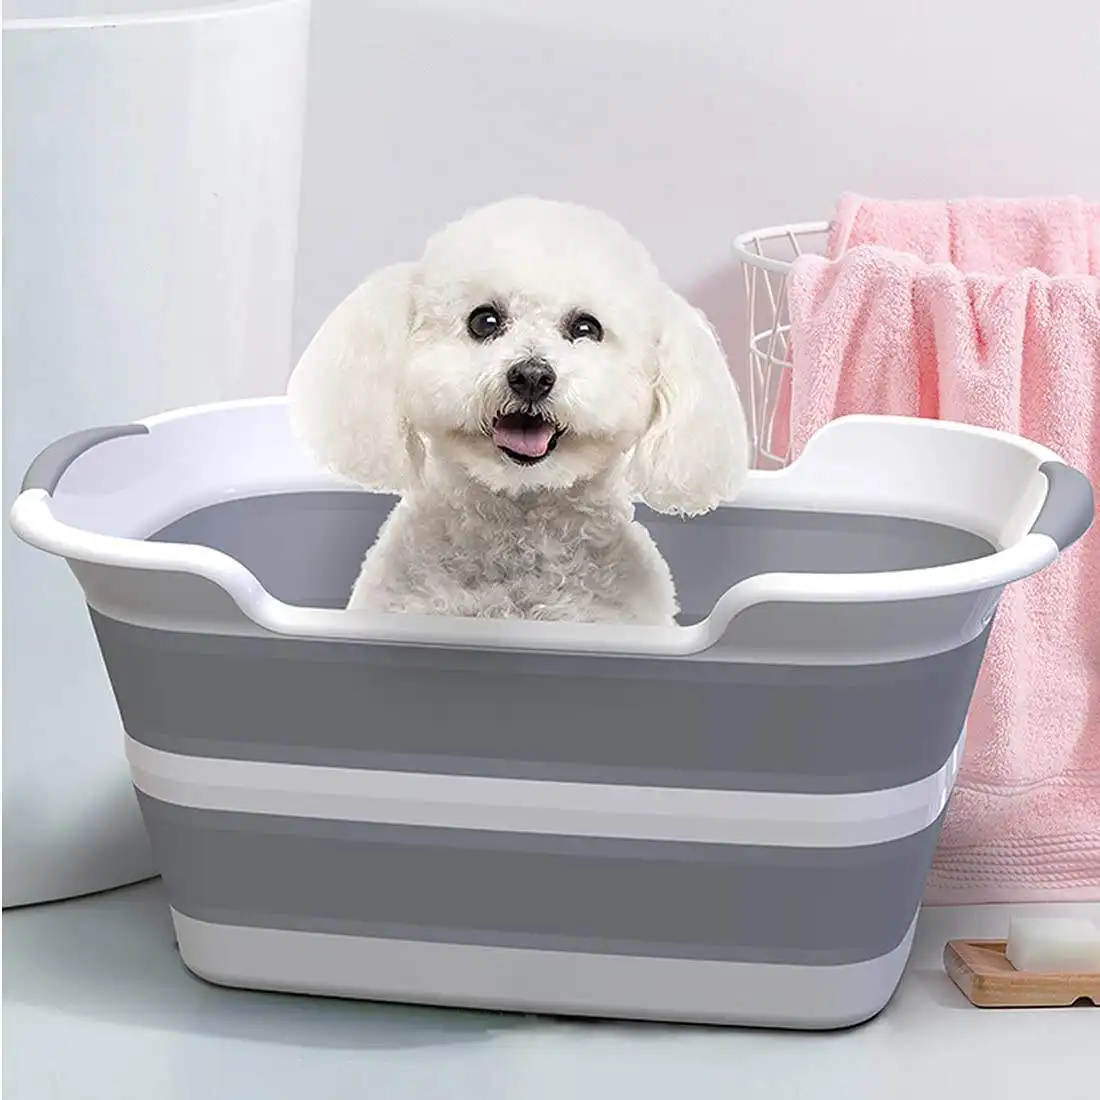 접이식 욕조 목욕 휴대용 실내 야외 욕조 다기능 접이식 애완 동물 욕조 배수 구멍